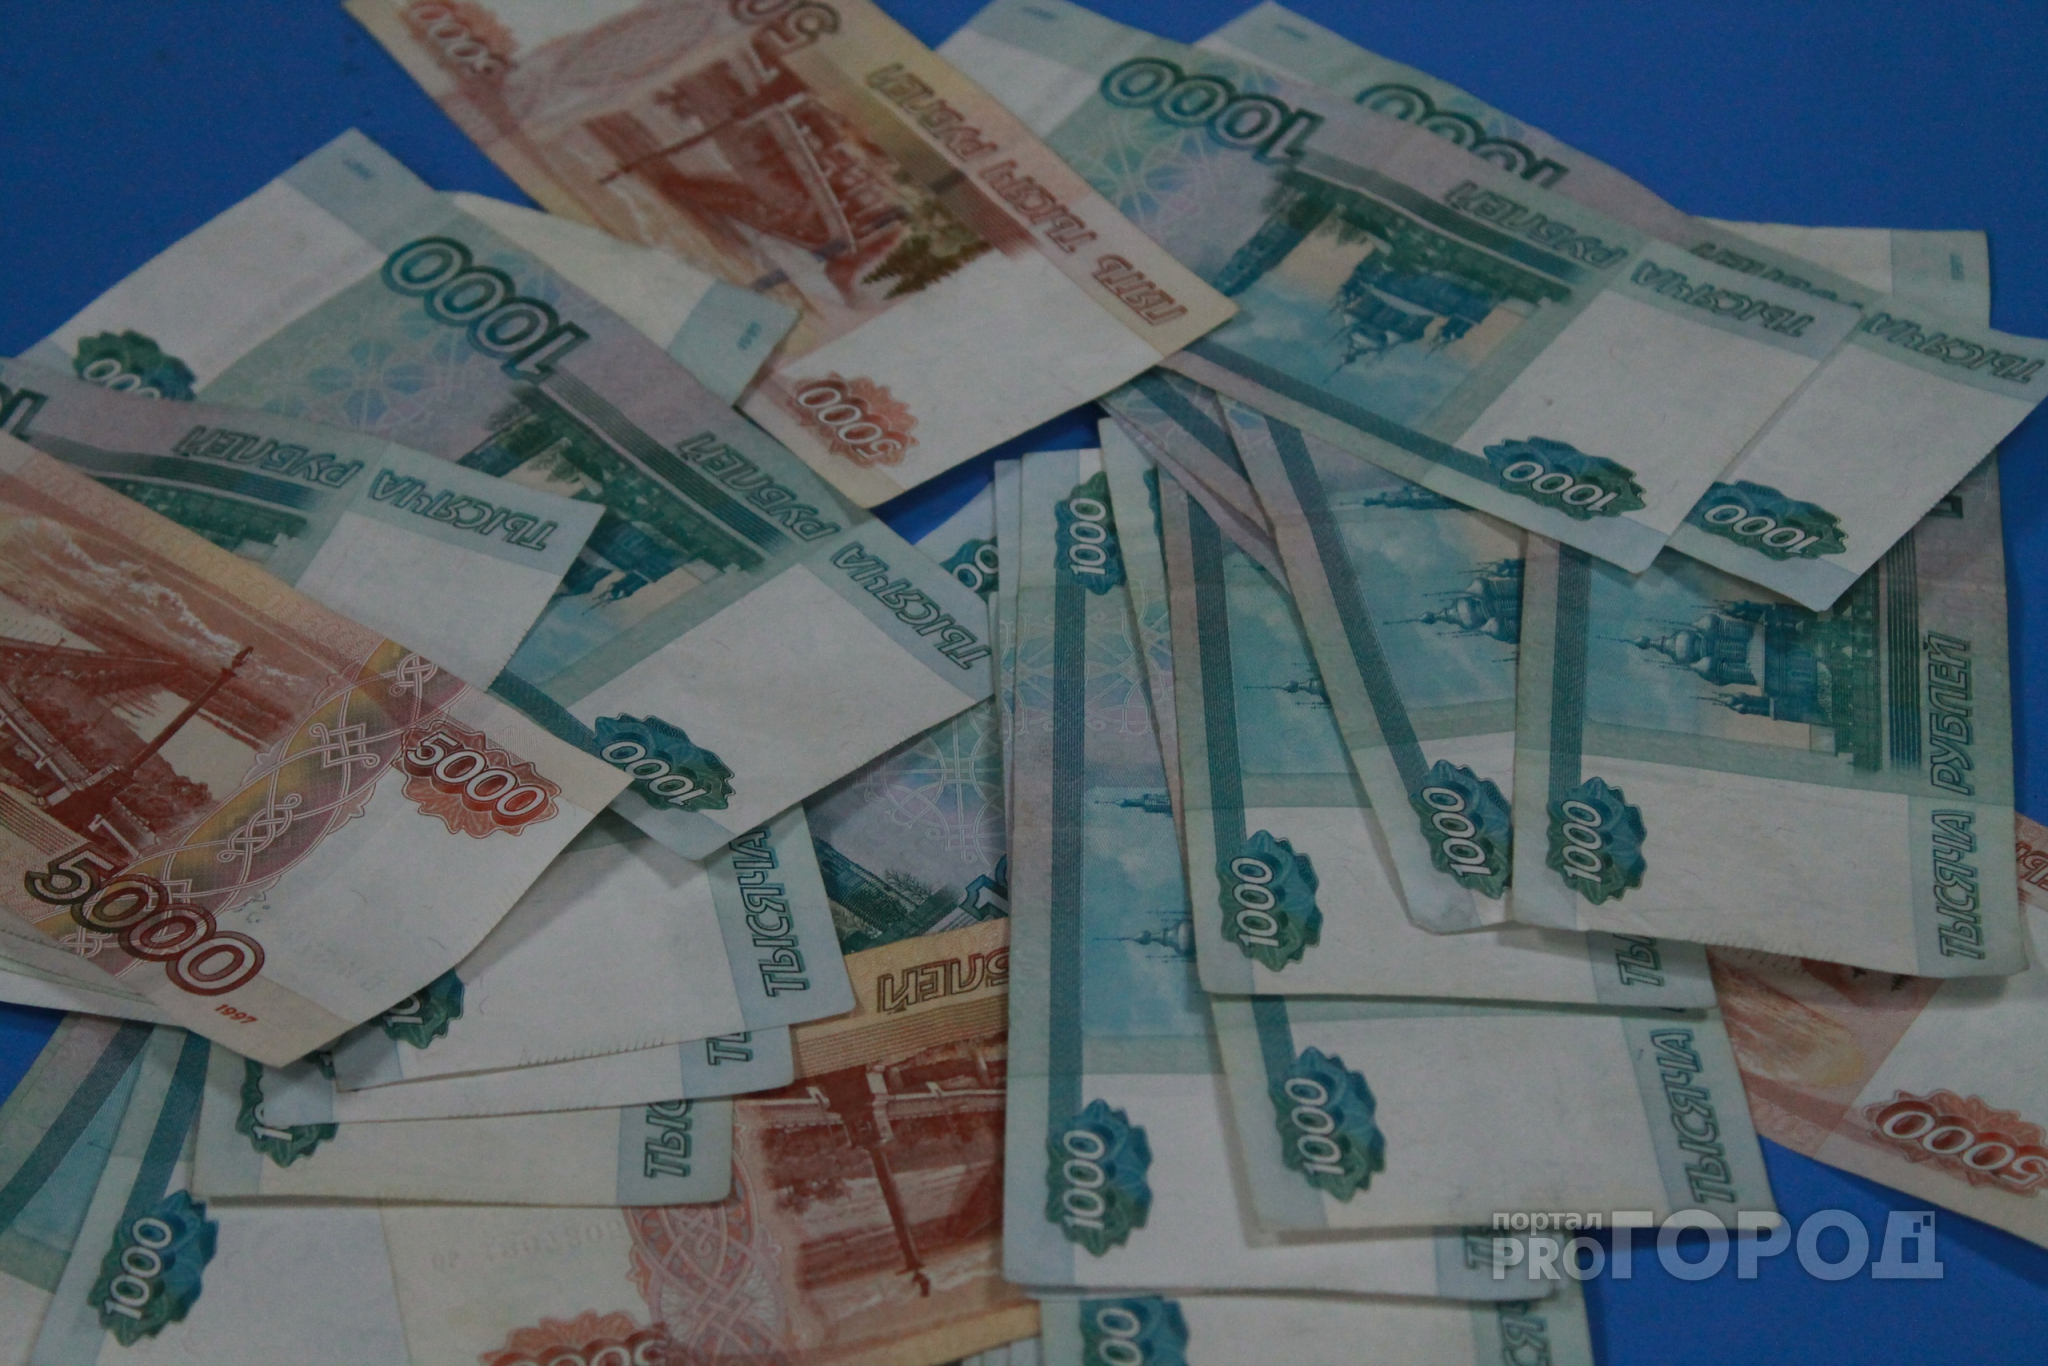 Снятие порчи стоит дорого: жительница Дзержинска отдала крупную сумму гадалке